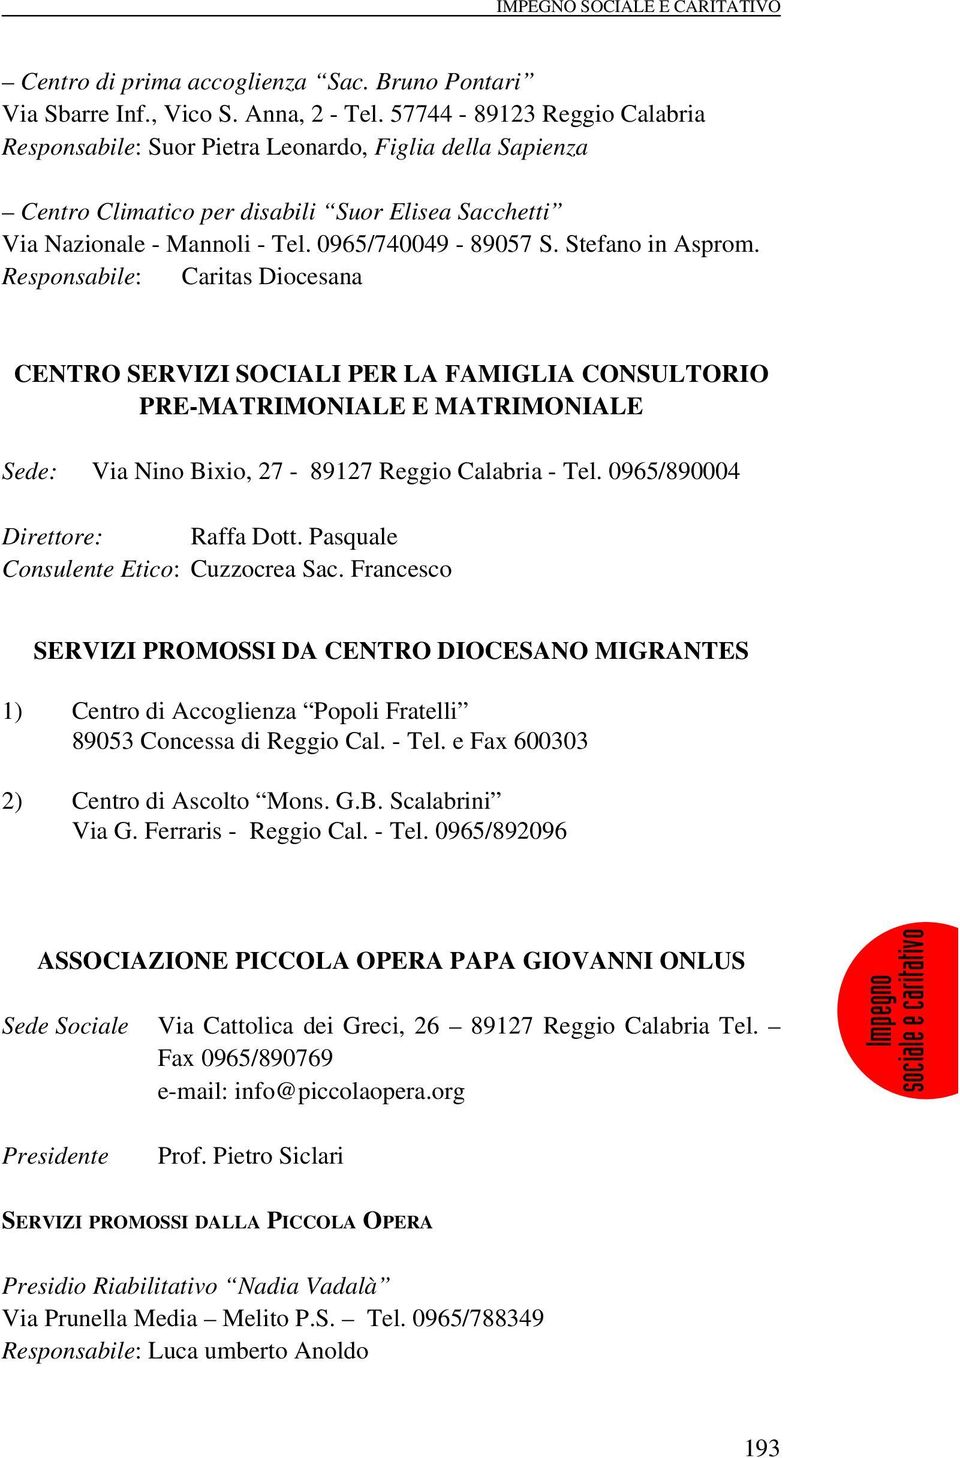 Stefano in Asprom. Responsabile: Caritas Diocesana CENTRO SERVIZI SOCIALI PER LA FAMIGLIA CONSULTORIO PRE-MATRIMONIALE E MATRIMONIALE : Via Nino Bixio, 27-89127 Reggio Calabria - Tel.